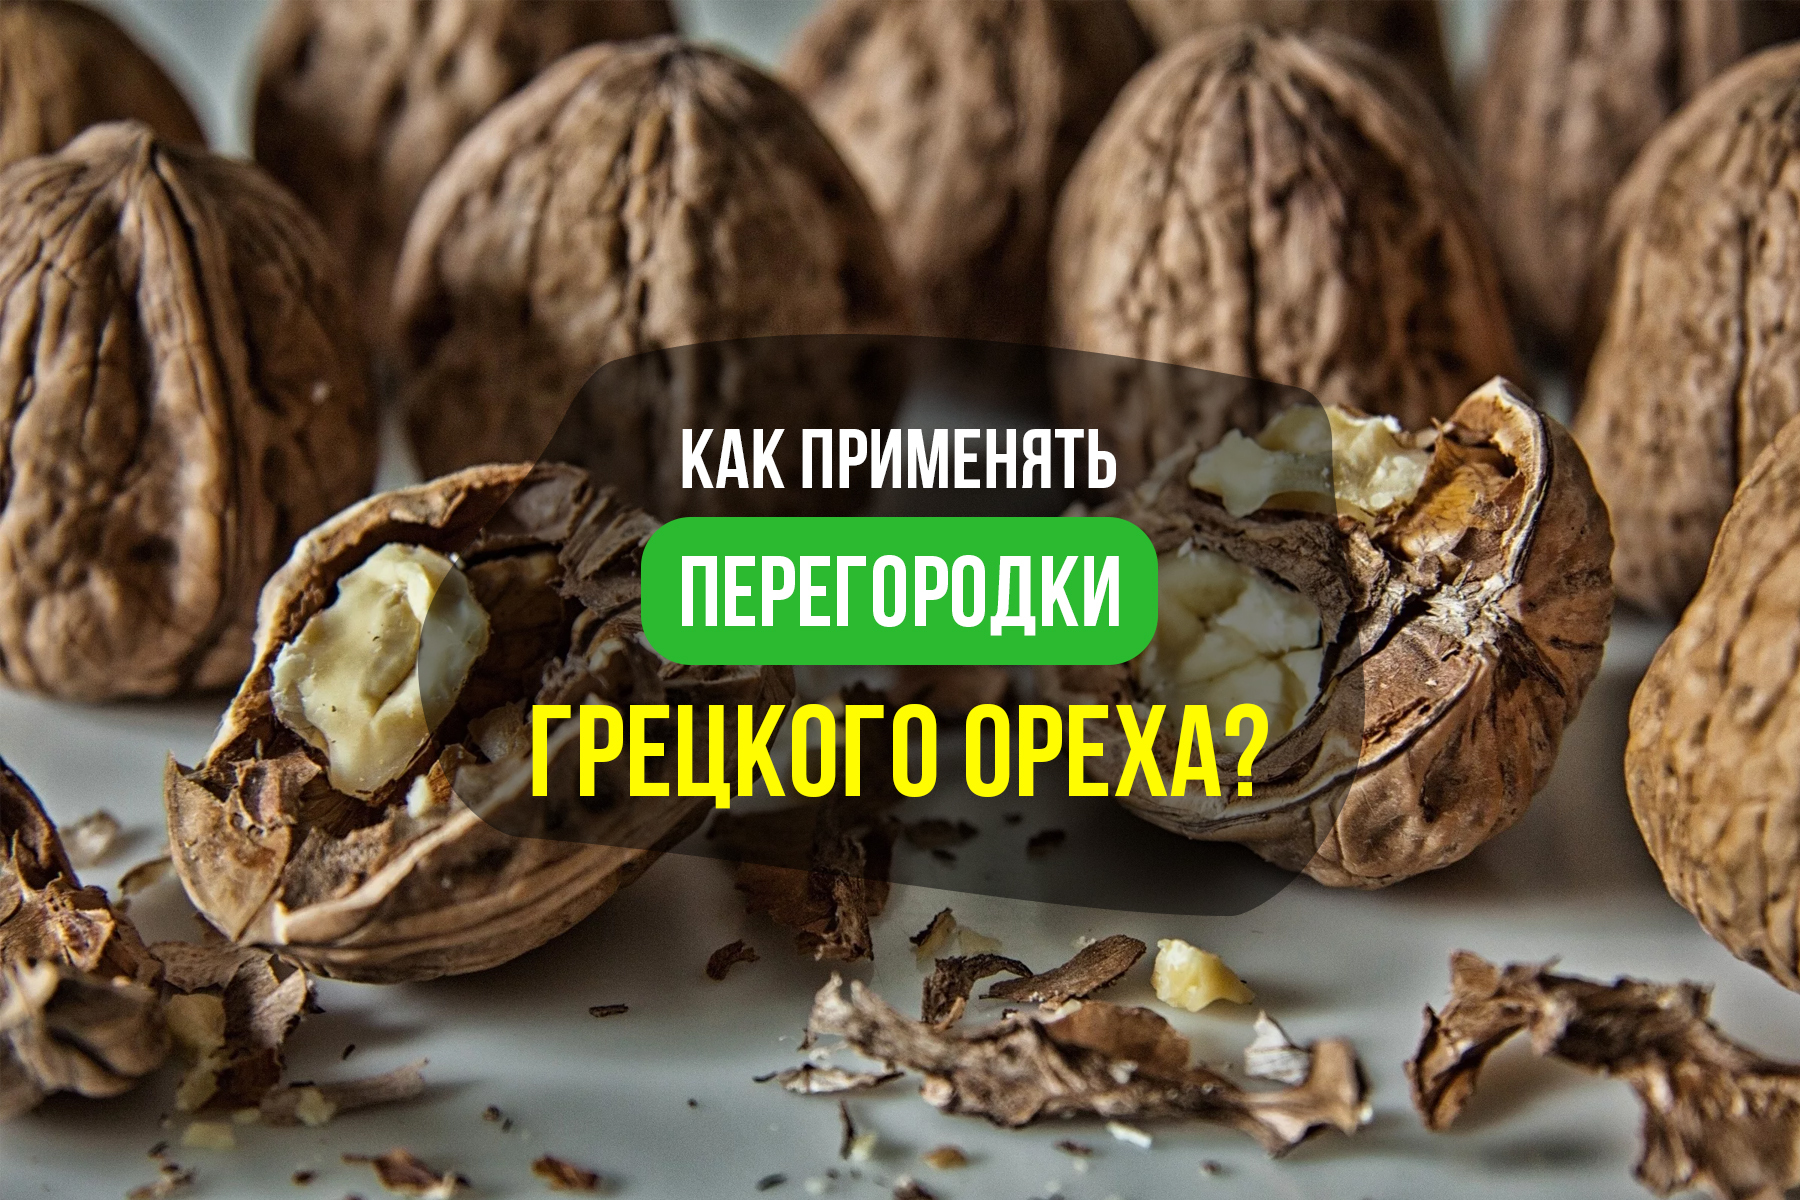 Перегородки грецкого ореха: как применять и для чего используют